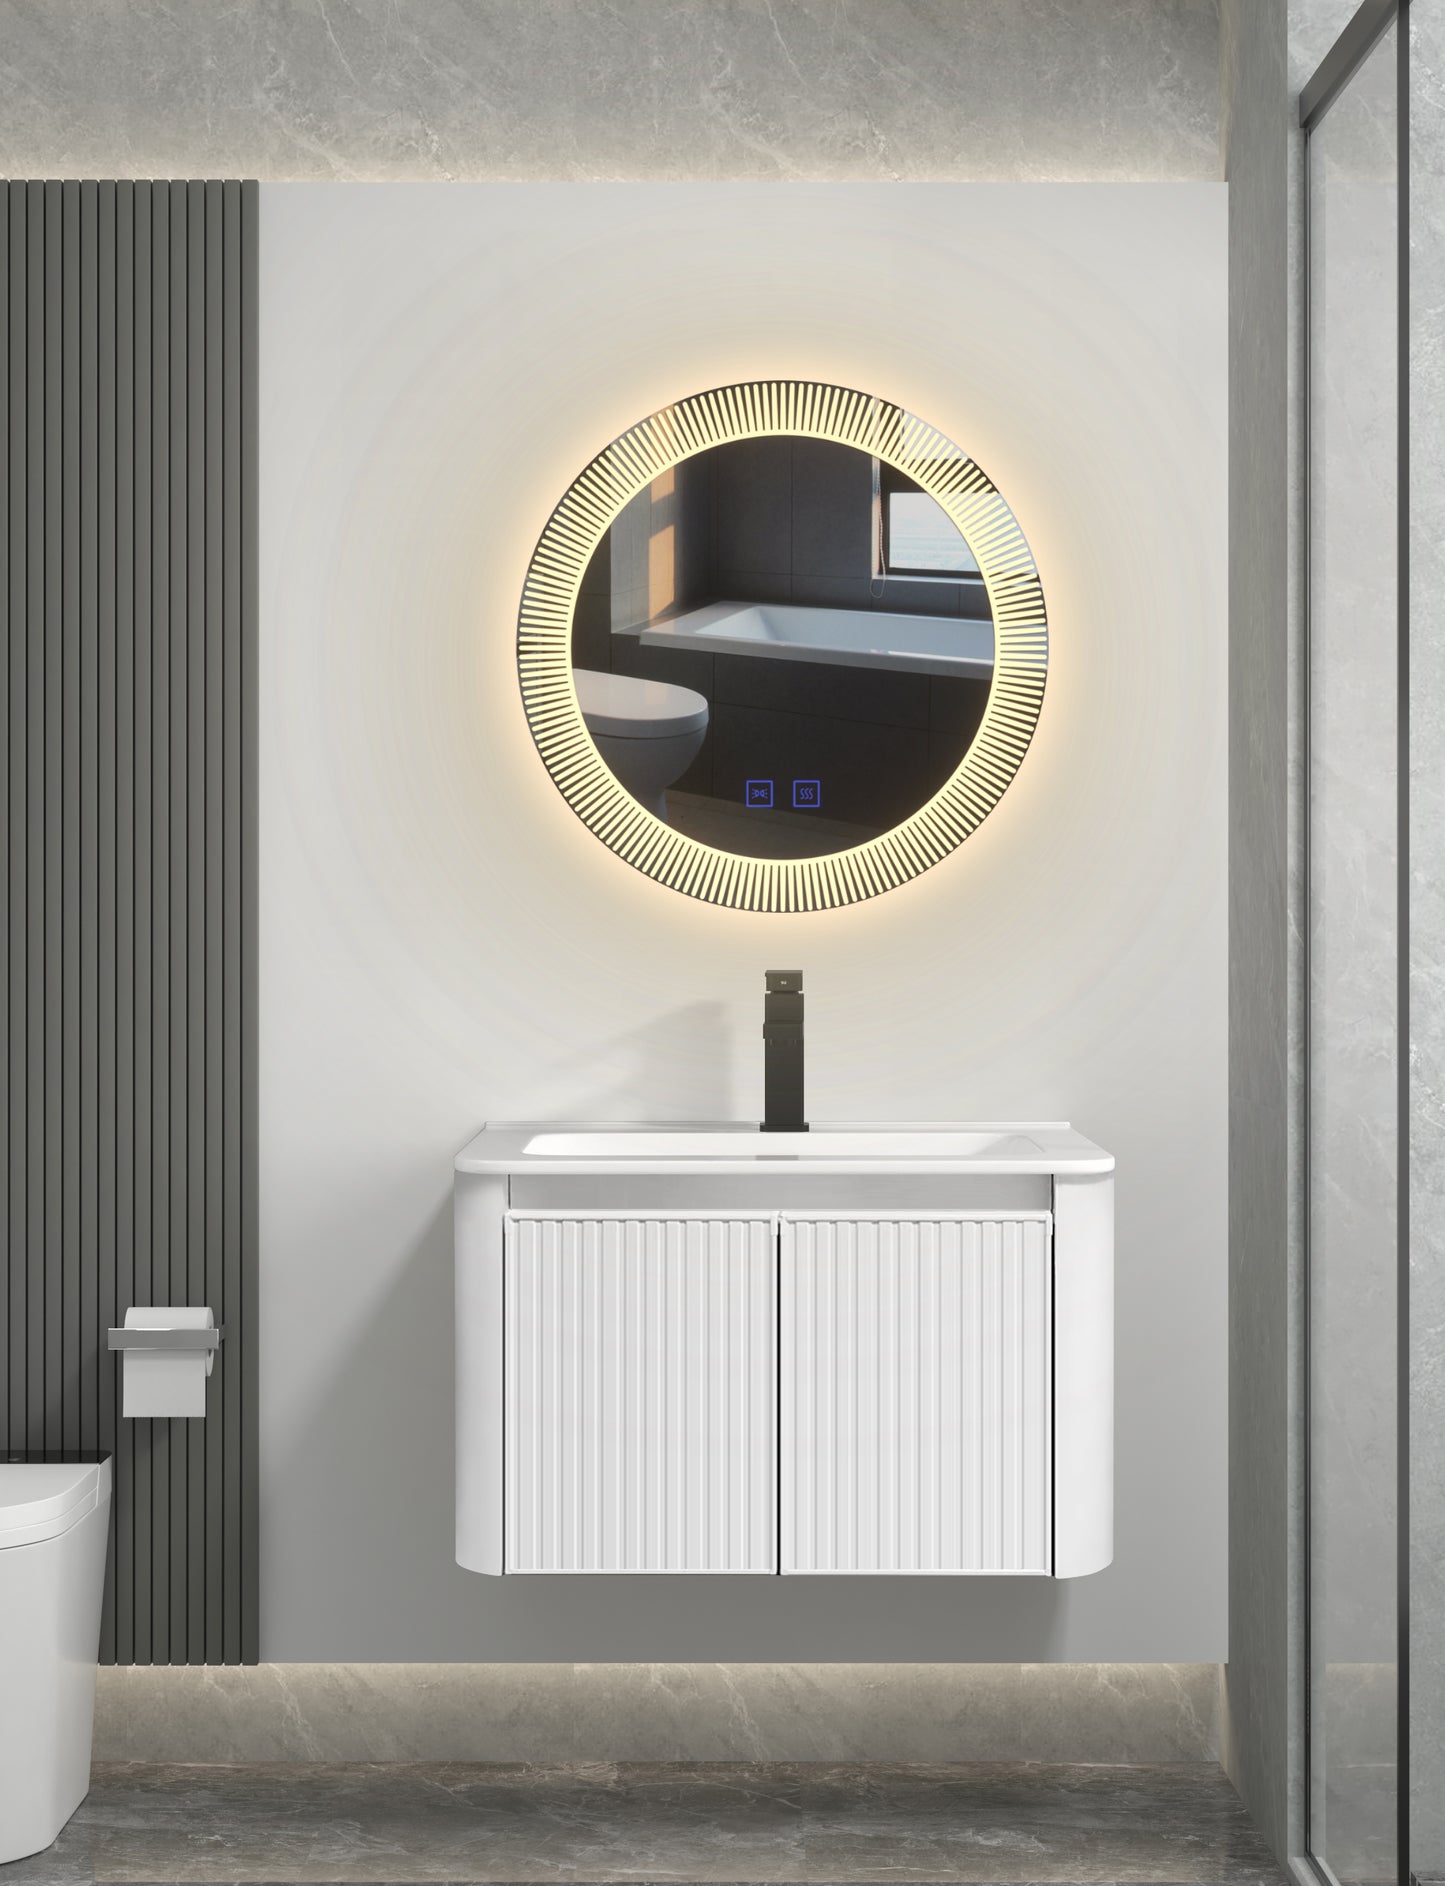 Шкаф для ванной комнаты серии 100 в скандинавском стиле, многослойный дизайн для хранения вещей